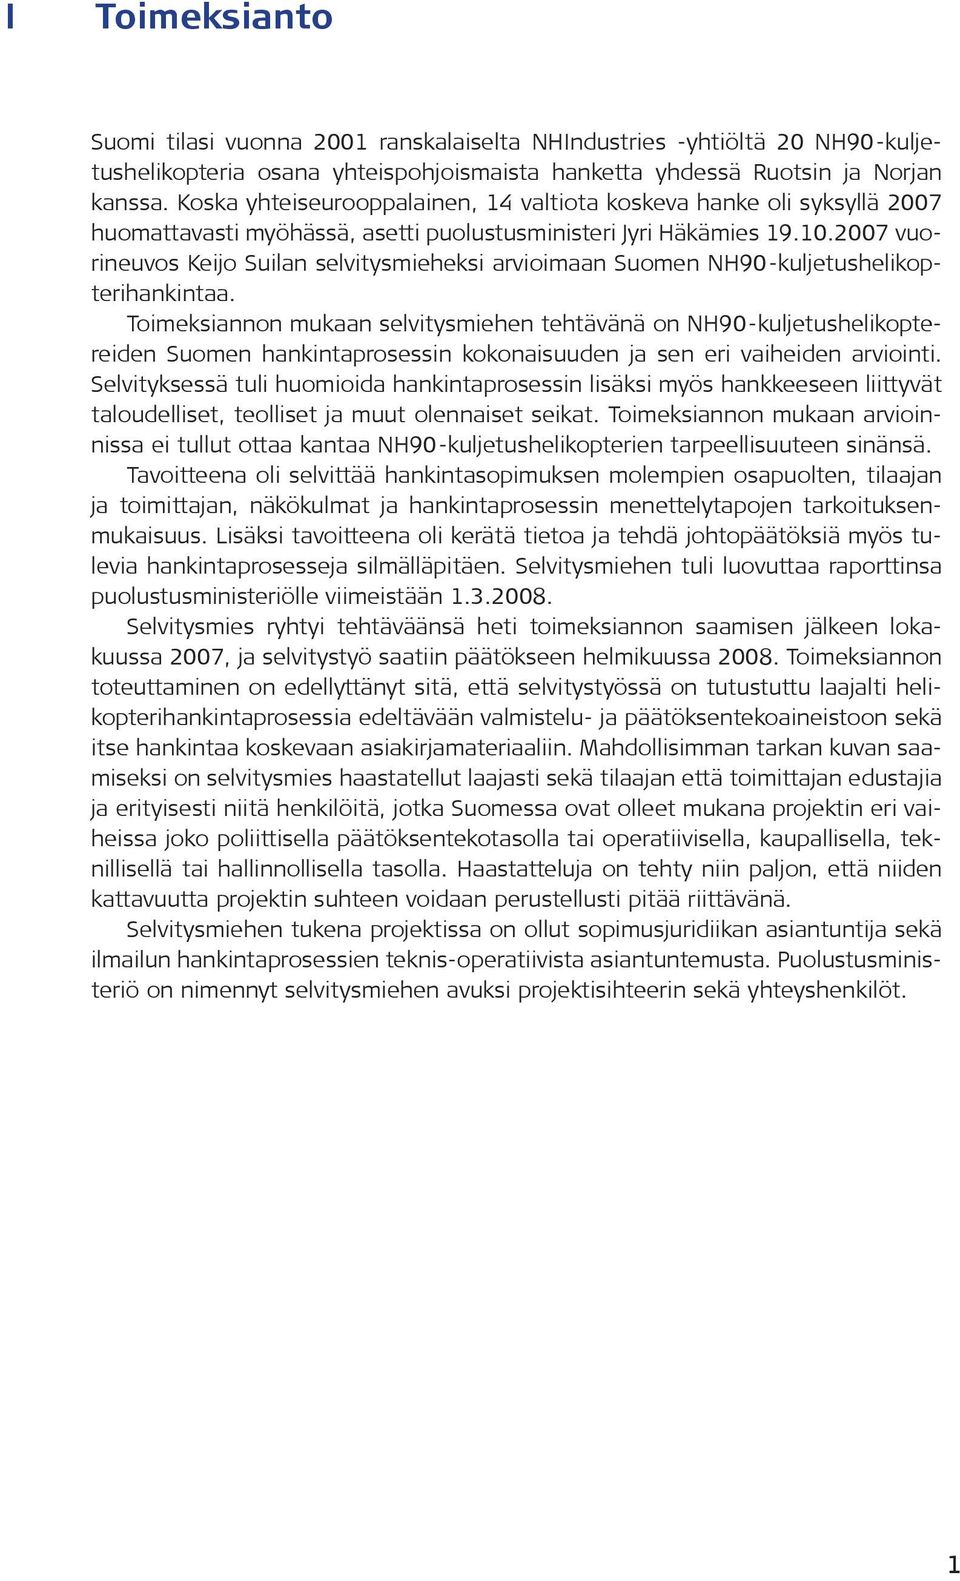 2007 vuorineuvos Keijo Suilan selvitysmieheksi arvioimaan Suomen NH90-kuljetushelikopterihankintaa.